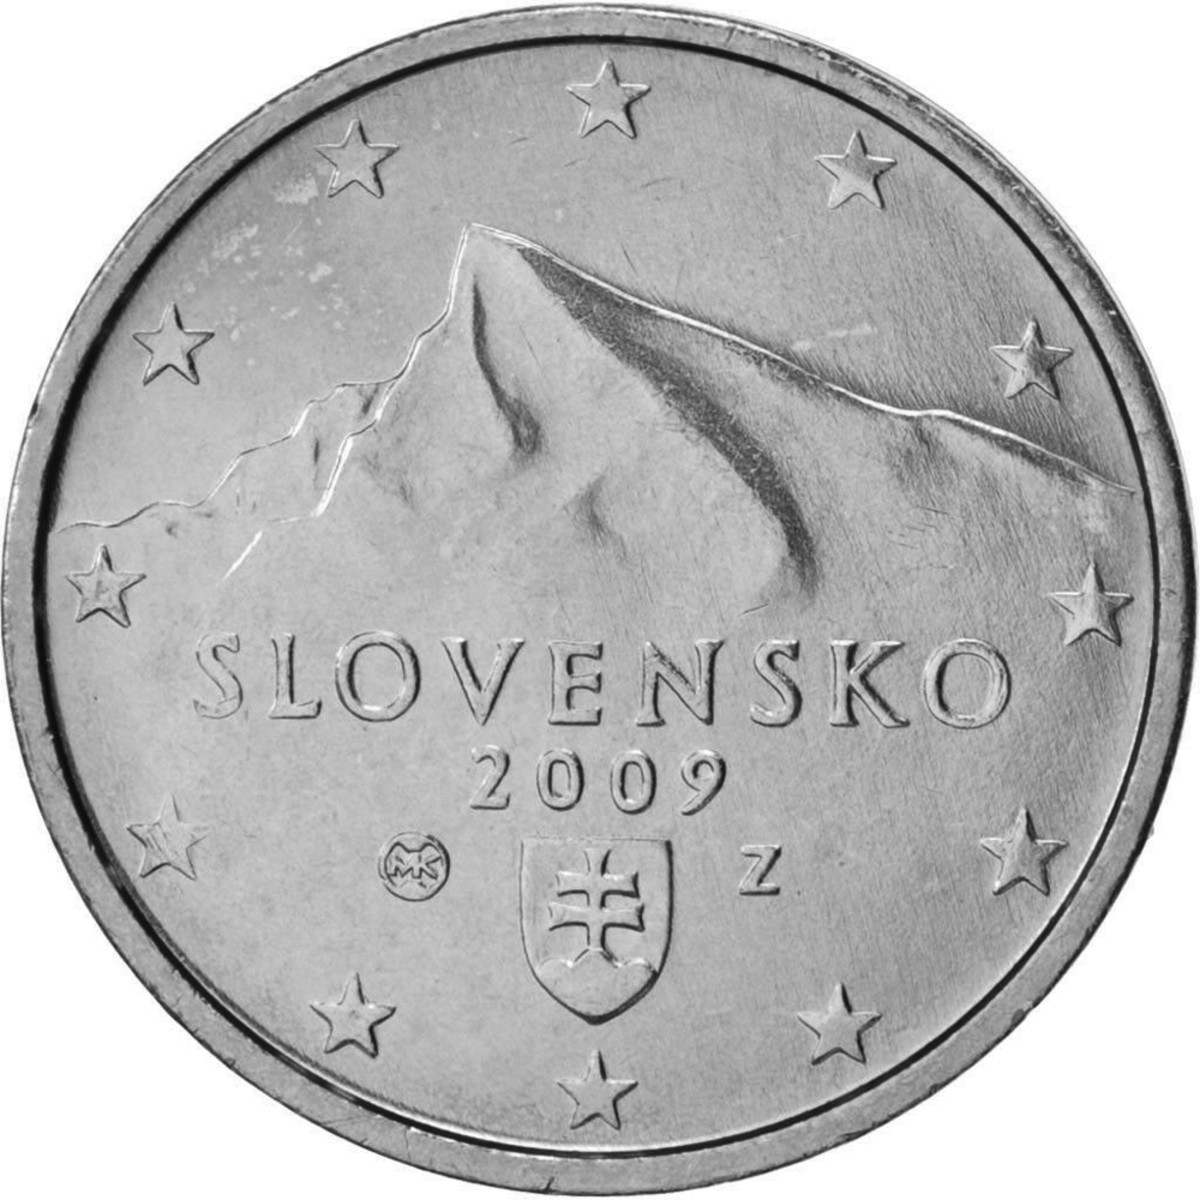 Photo of Slovensko navrhuje pokles meny euro s nízkou nominálnou hodnotou